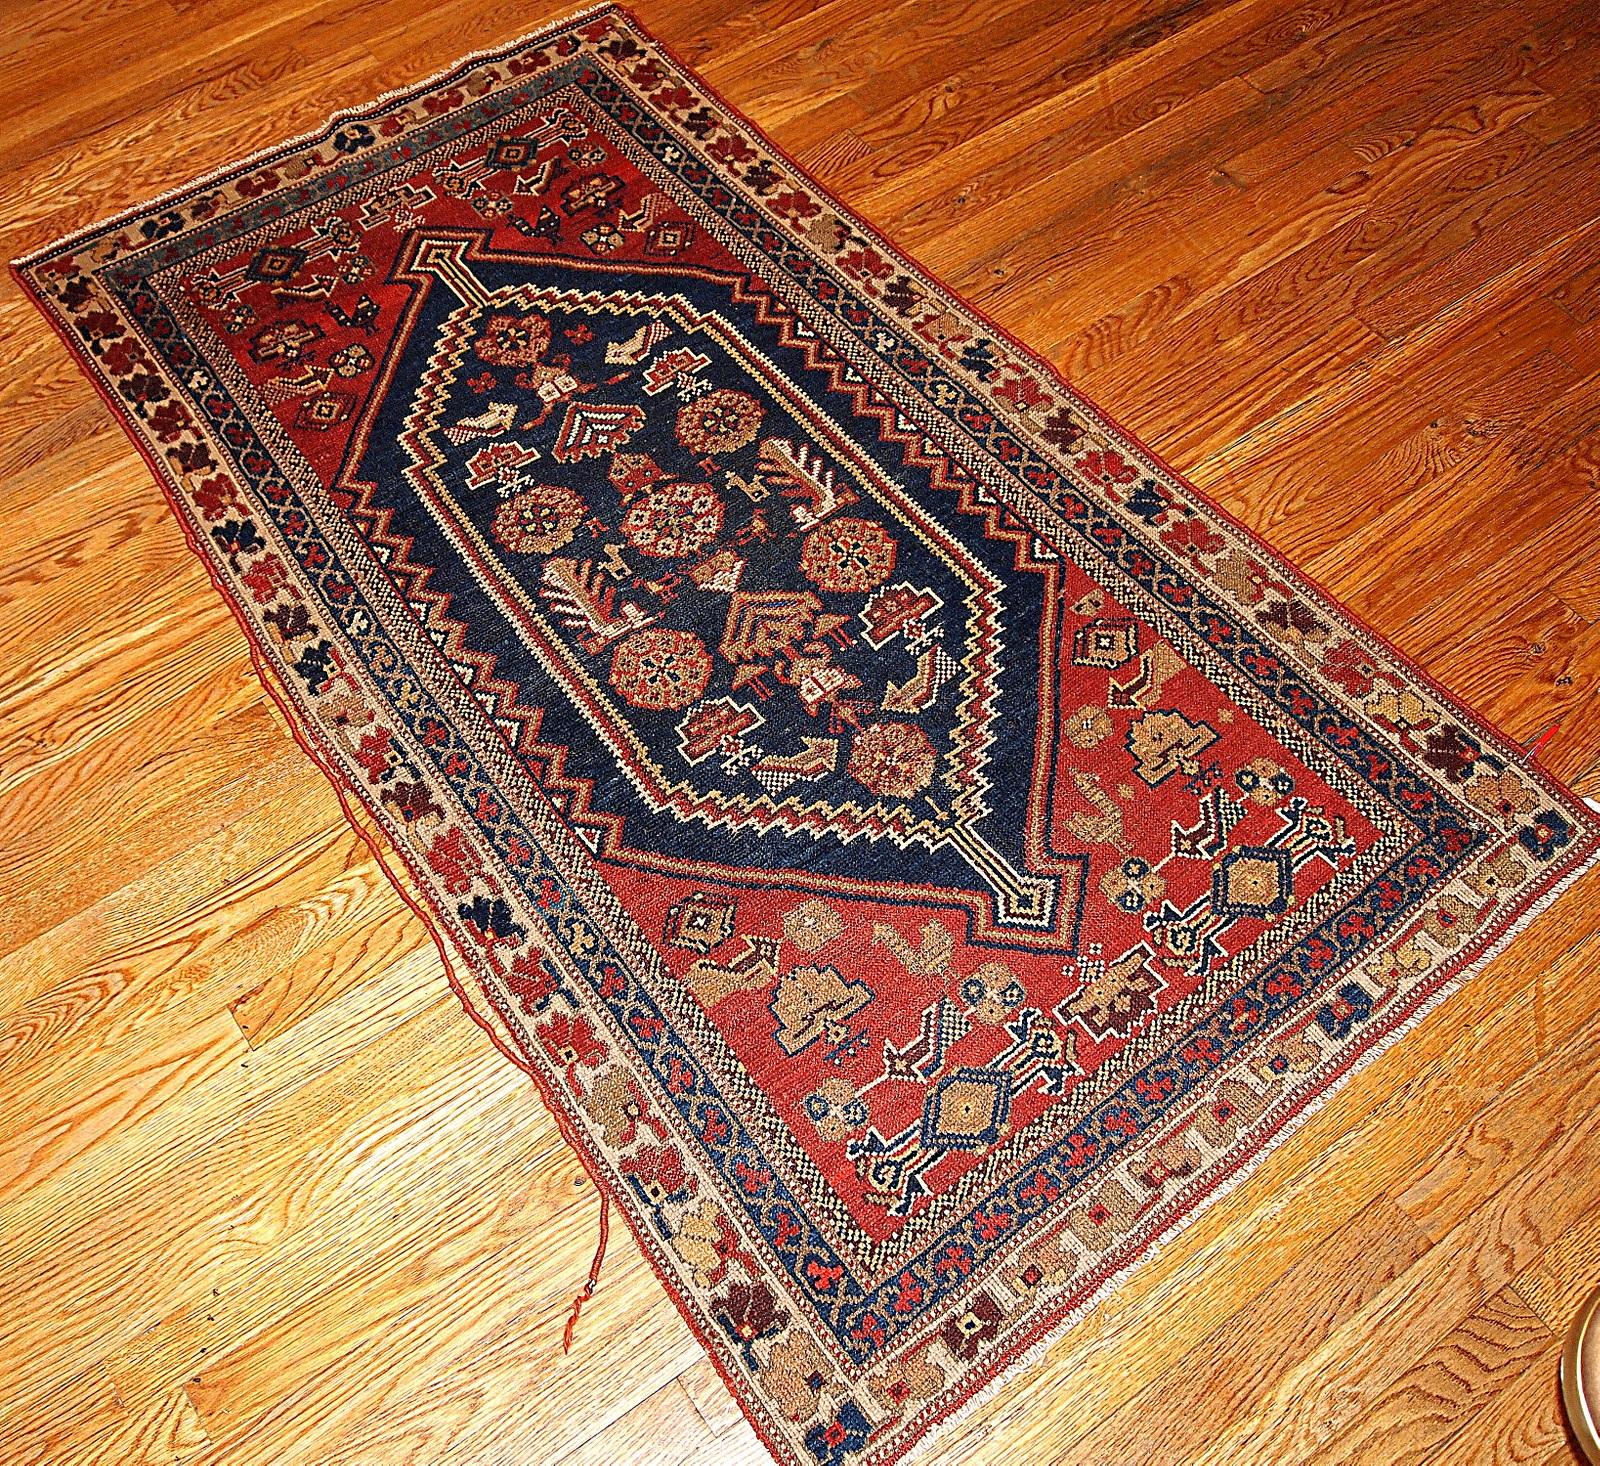 Shiraz-Teppich mit Tribal-Muster in marineblauen und roten Farbtönen. Dieser Teppich ist in einem guten Originalzustand.

-Zustand: original gut,

-Etwa: 1920er Jahre,

-Größe: 3,2' x 5,9' (97cm x 180cm),

-Material: Wolle,

-Stil: